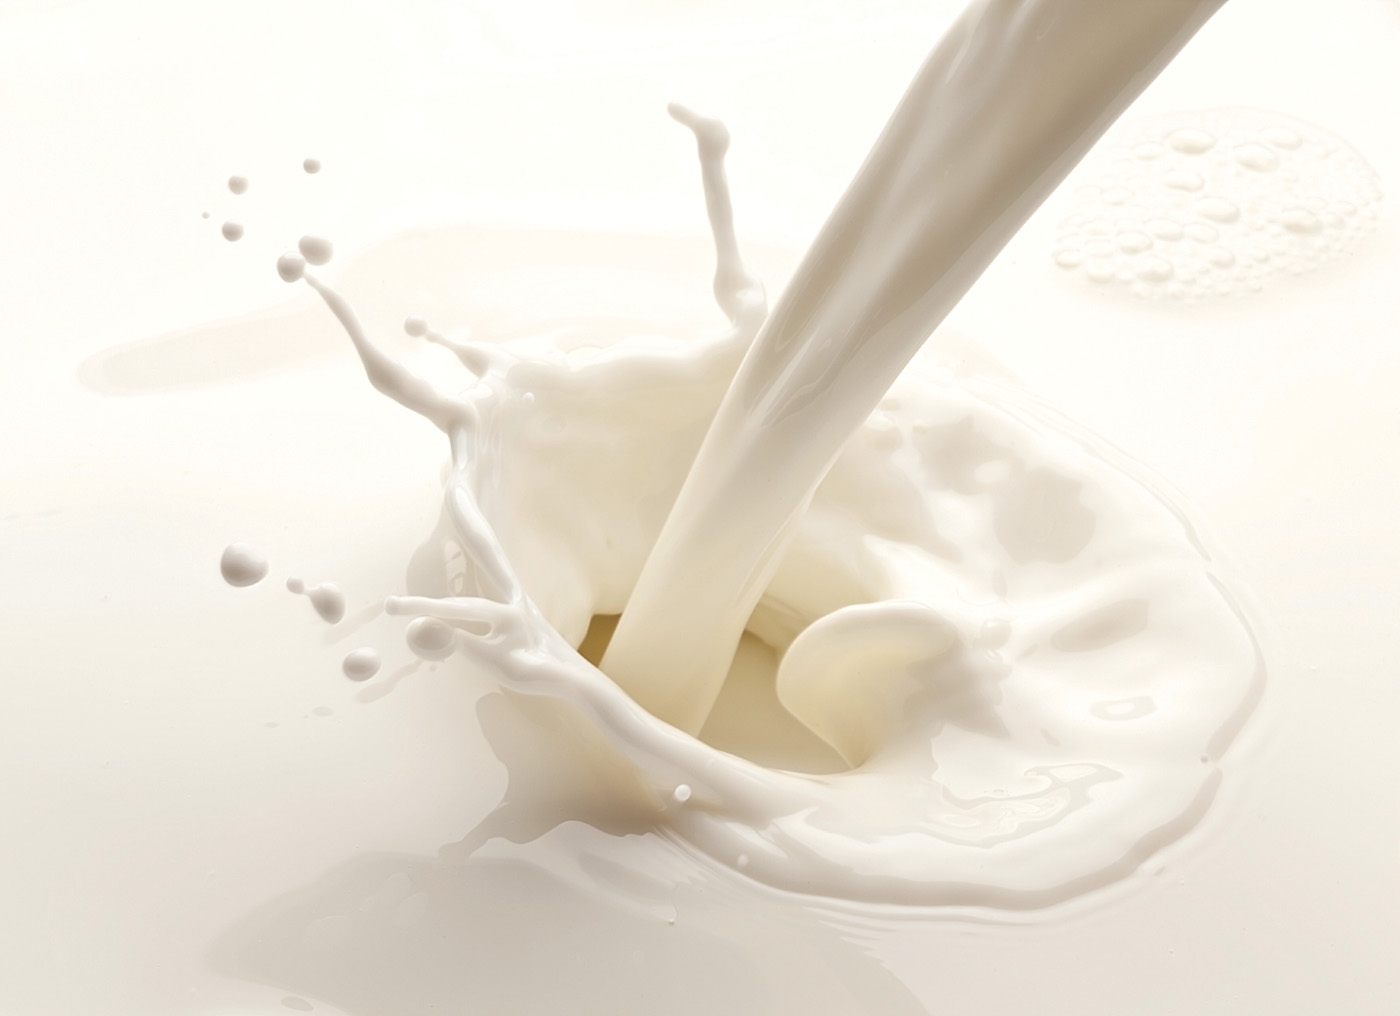  إهدار الحبوب والحليب في المساحات التجارية الكبرى يصل إلى 8ر2 مليون دينار